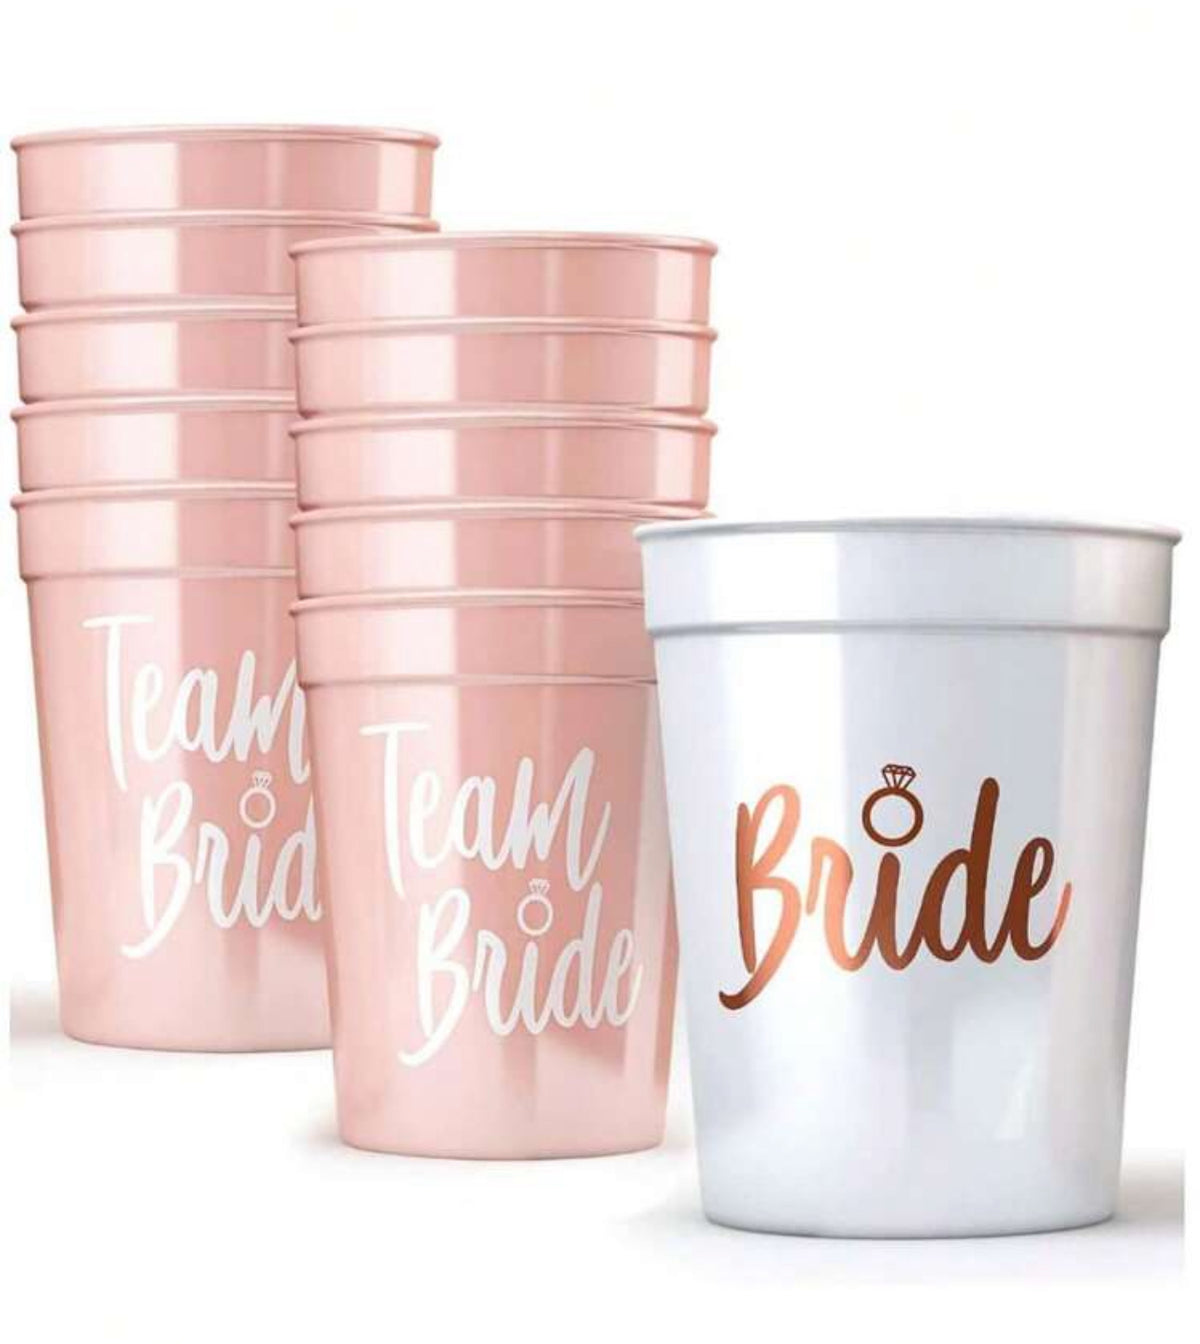 Team Bride Cup Set